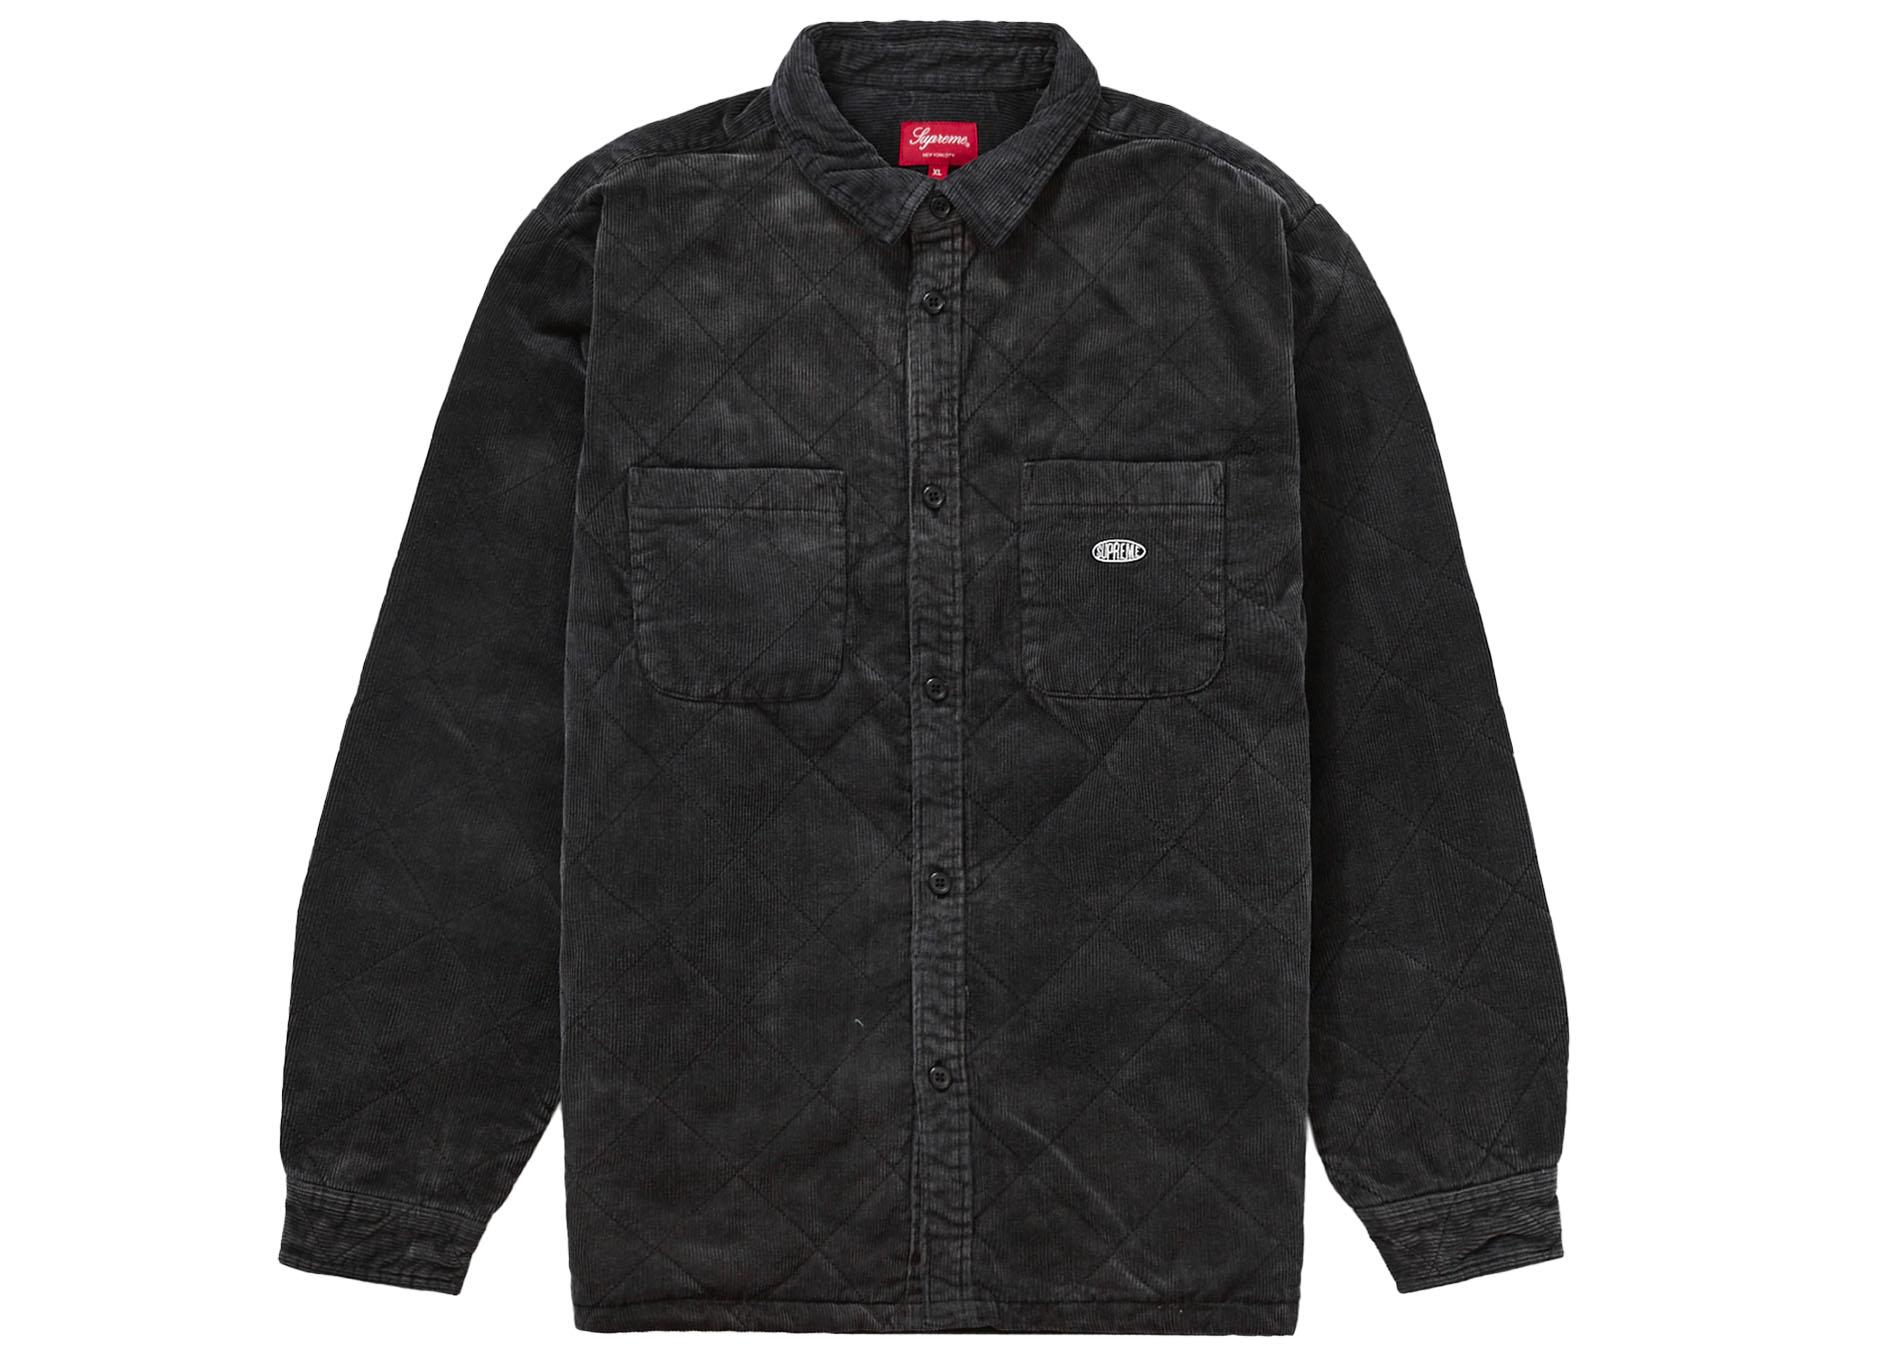 6,900円Supreme Corduroy Shirt Black